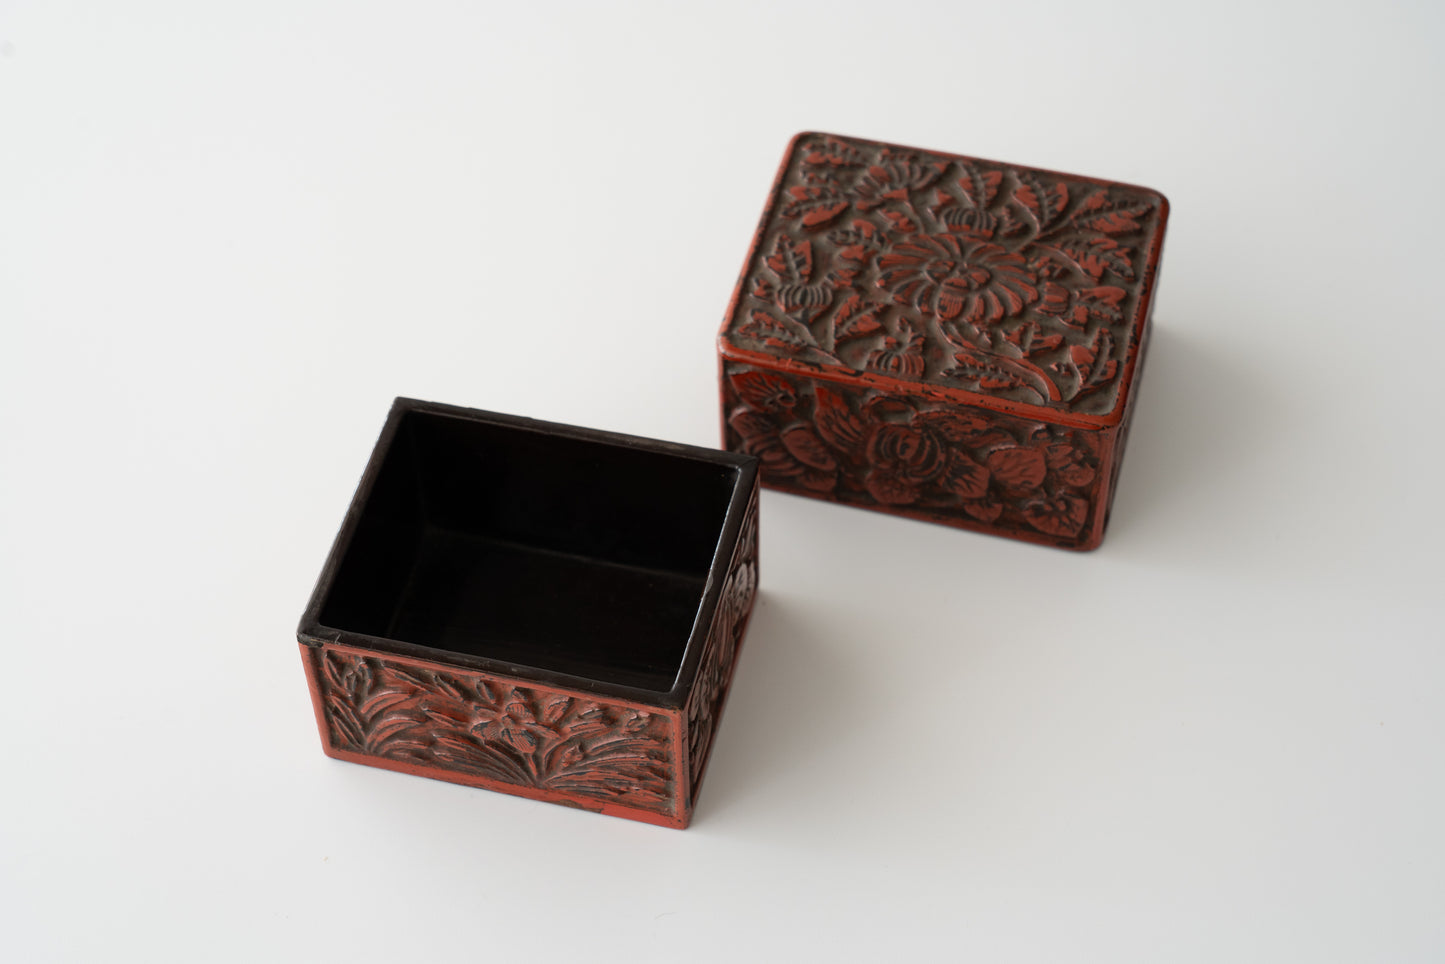 Kamakura-bori incense box with Narcissus and Chrysanthemum design